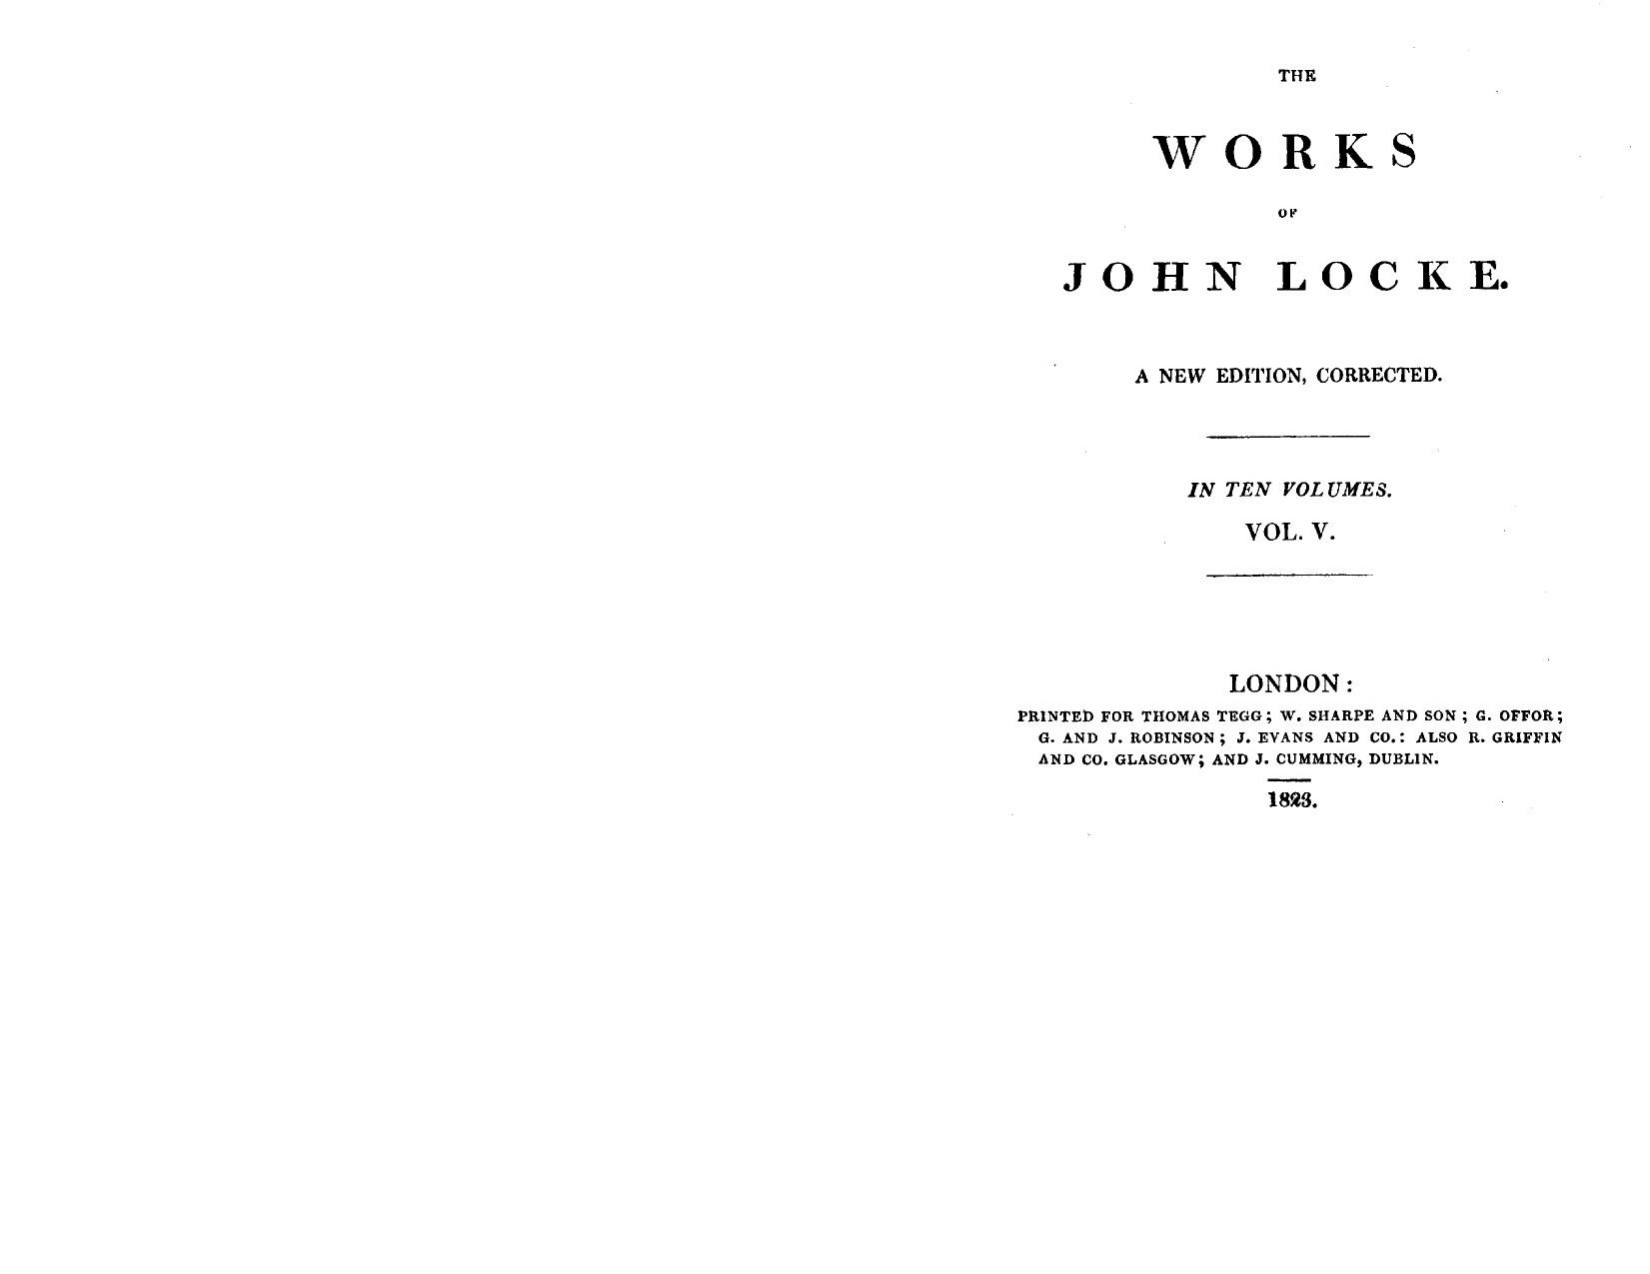 The works of John Locke 05 by John Locke